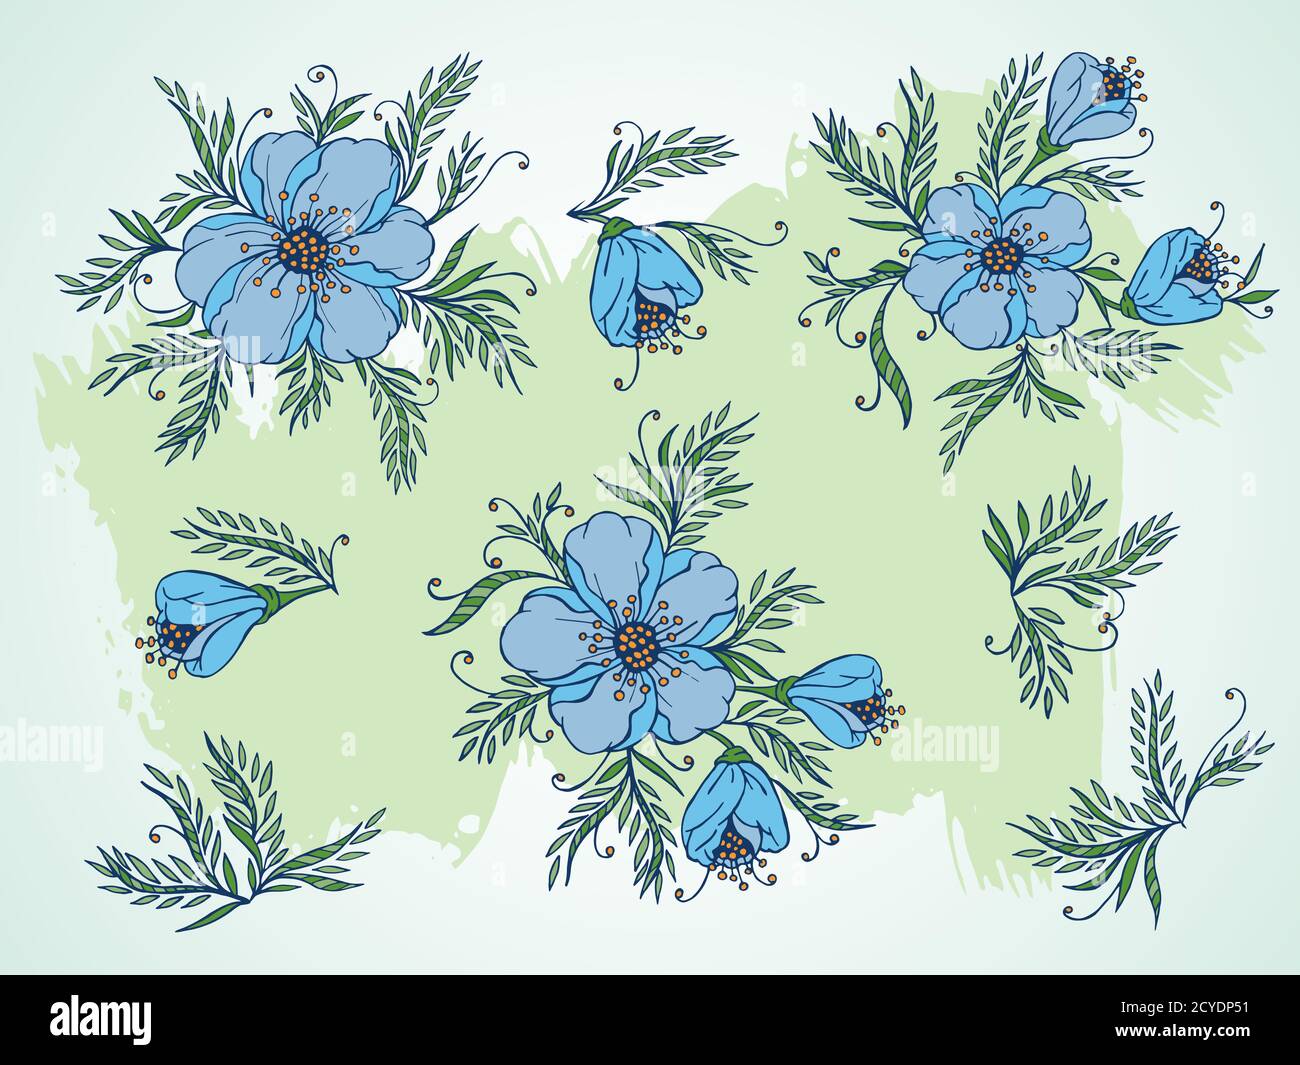 Insieme vettoriale di fiori, rami e foglie disegnati a mano su sfondo testurizzato. Nei colori blu e verde. Illustrazione Vettoriale